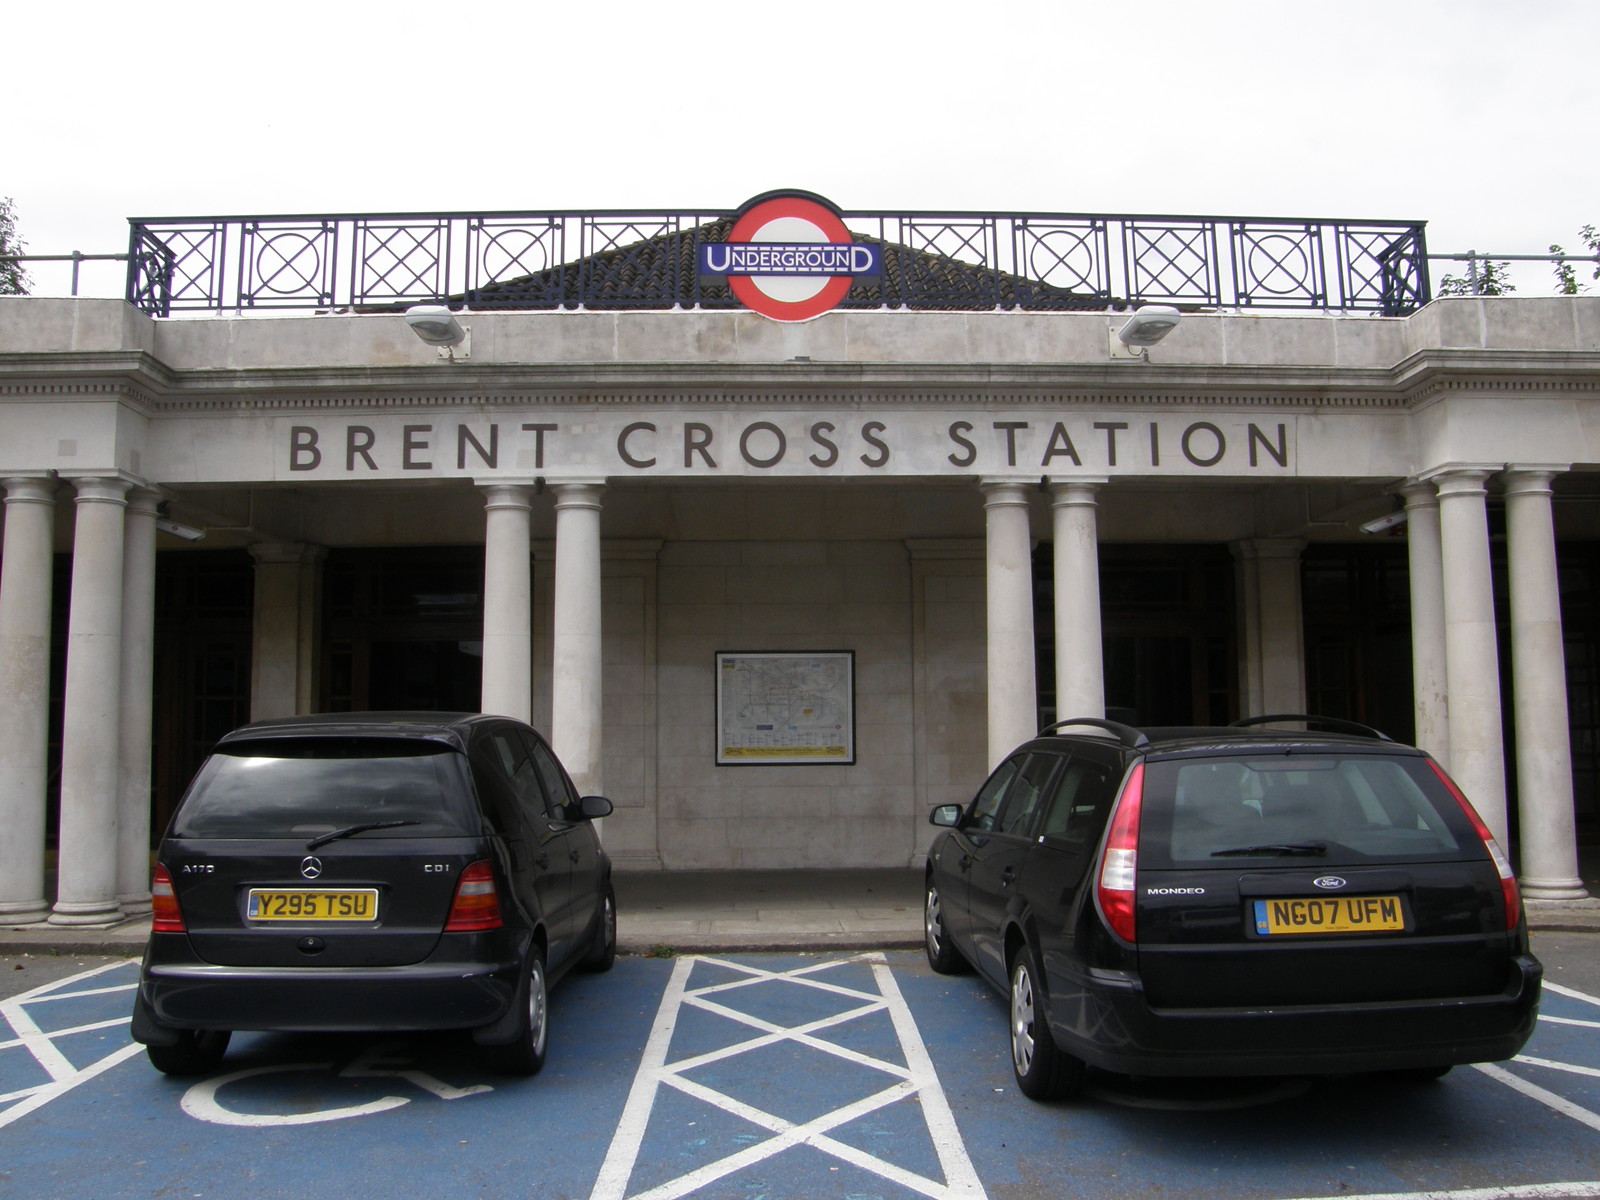 Brent Cross station